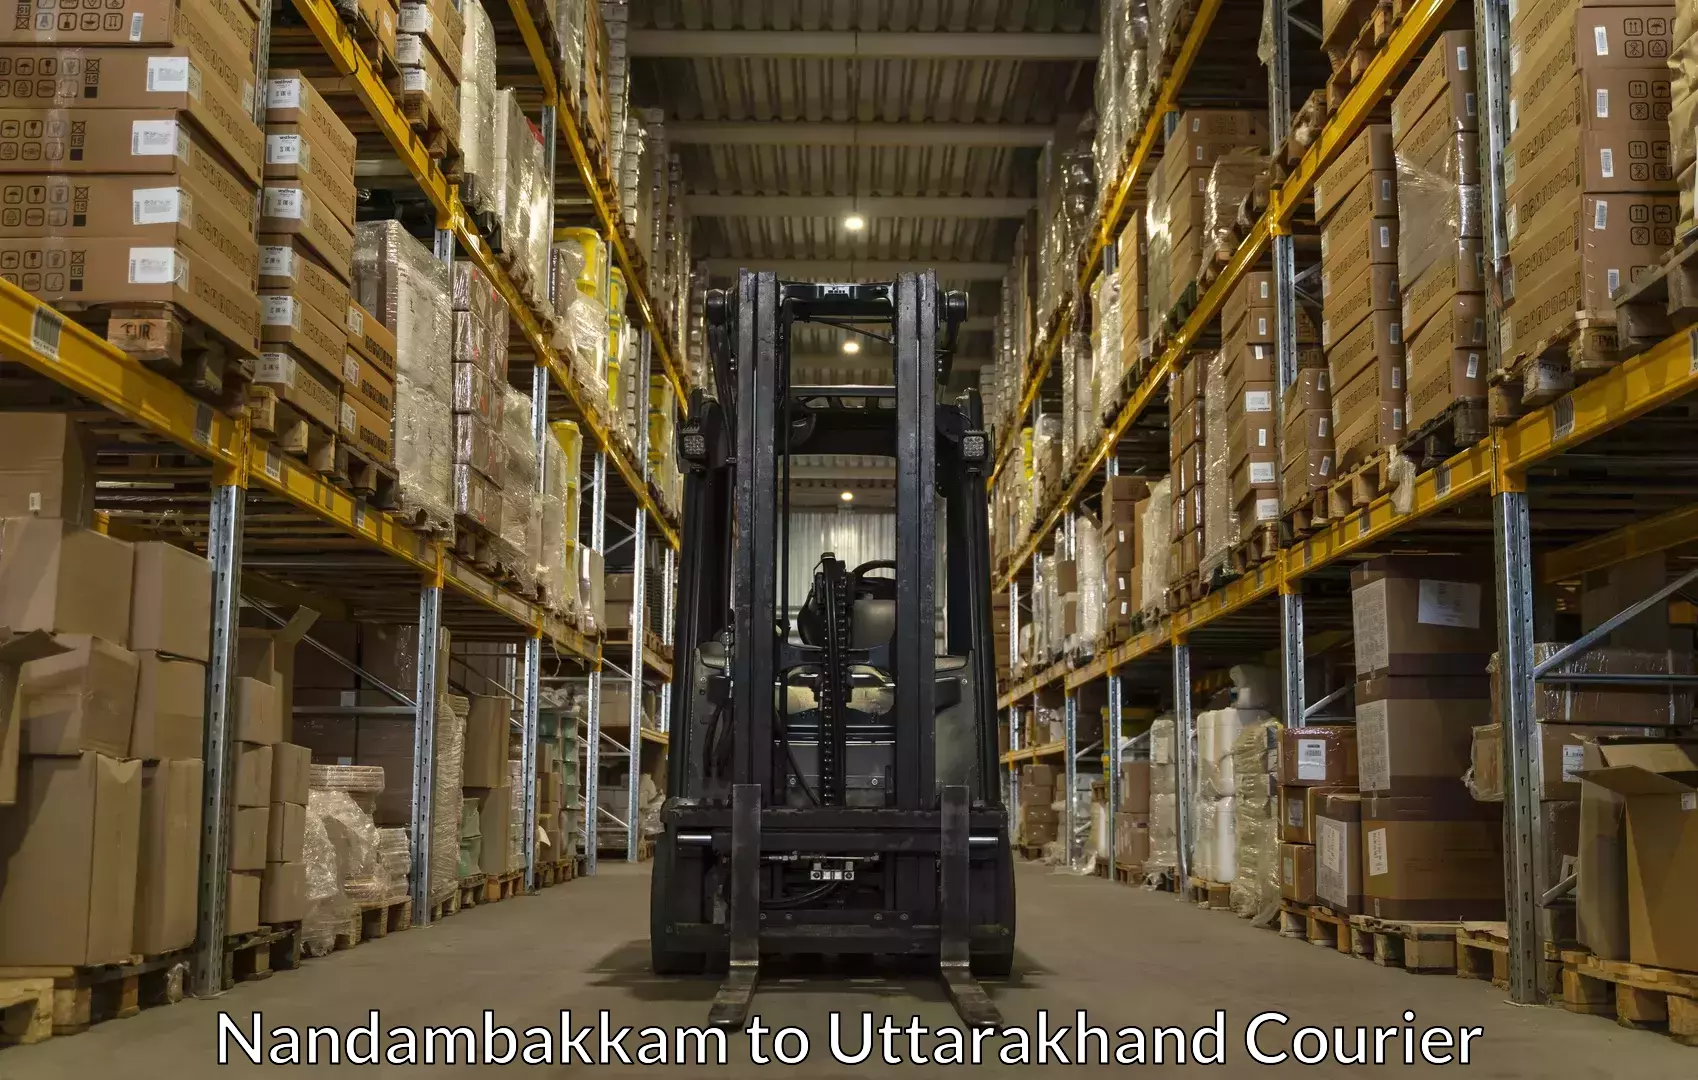 Baggage courier operations Nandambakkam to Uttarkashi